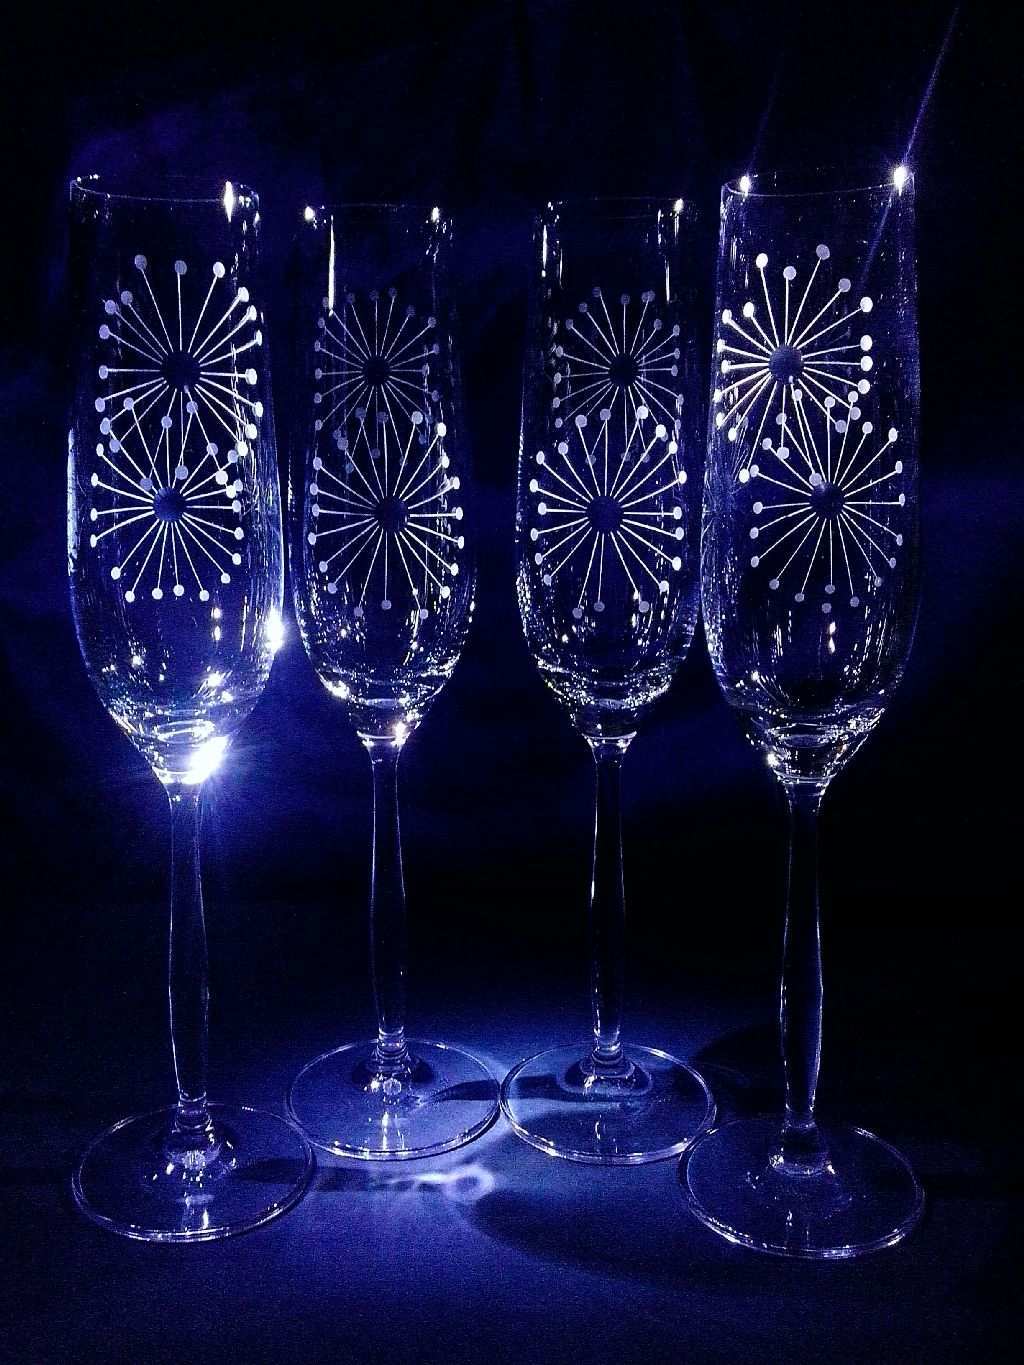 Sektkelch Champagner Glas Sektglaser Hand Geschliffen Muster Lowenzahn 076 190 Ml 2 Stuck